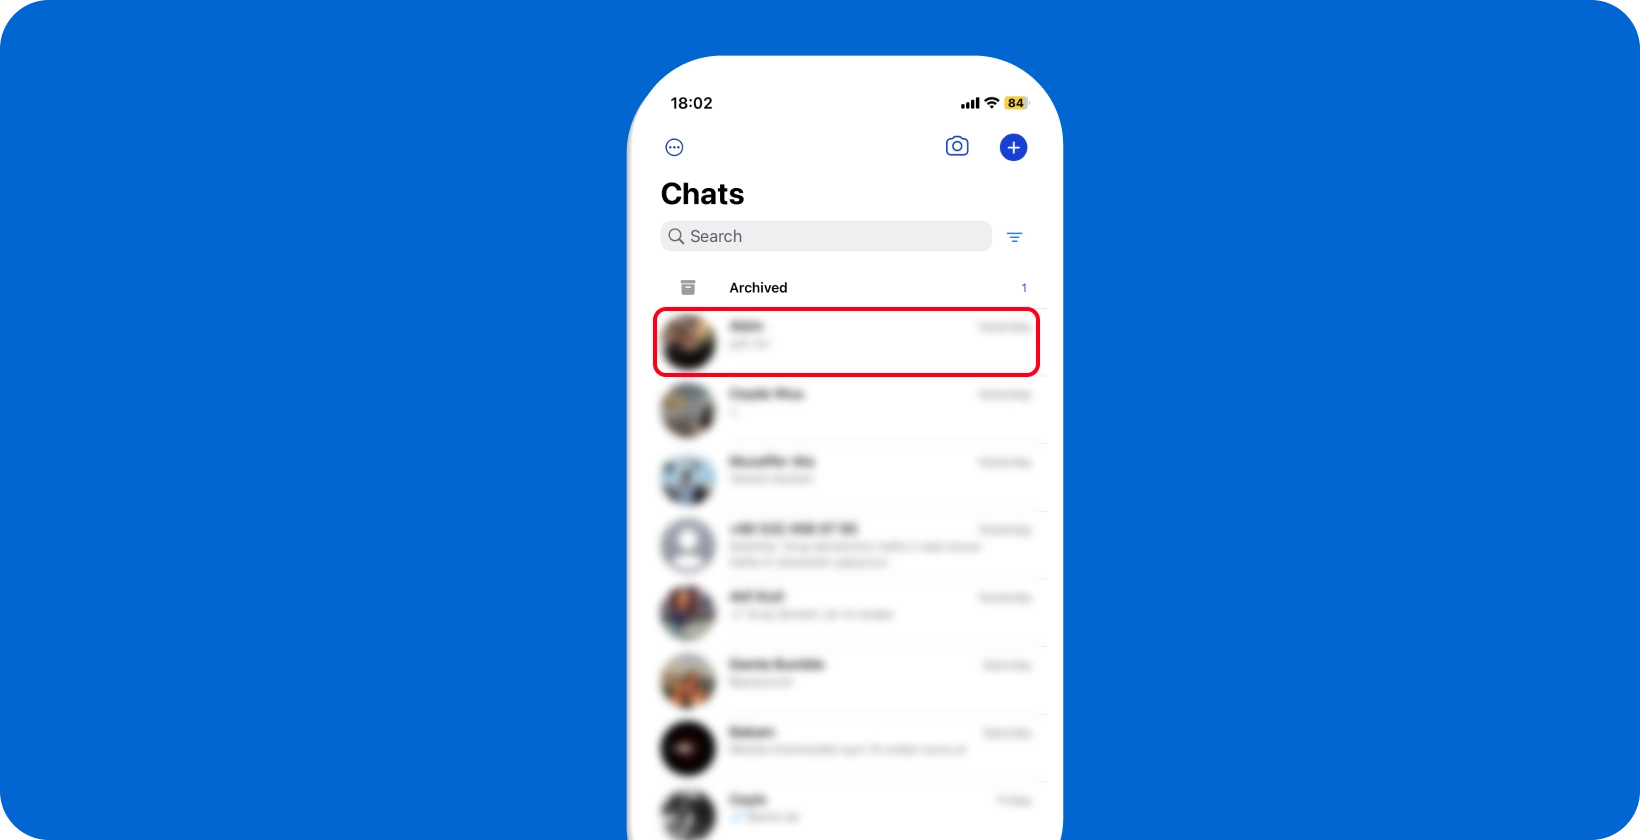 WhatsApp tela de bate-papo mostrando uma visão geral das conversas, pronta para interação do usuário e ditado.